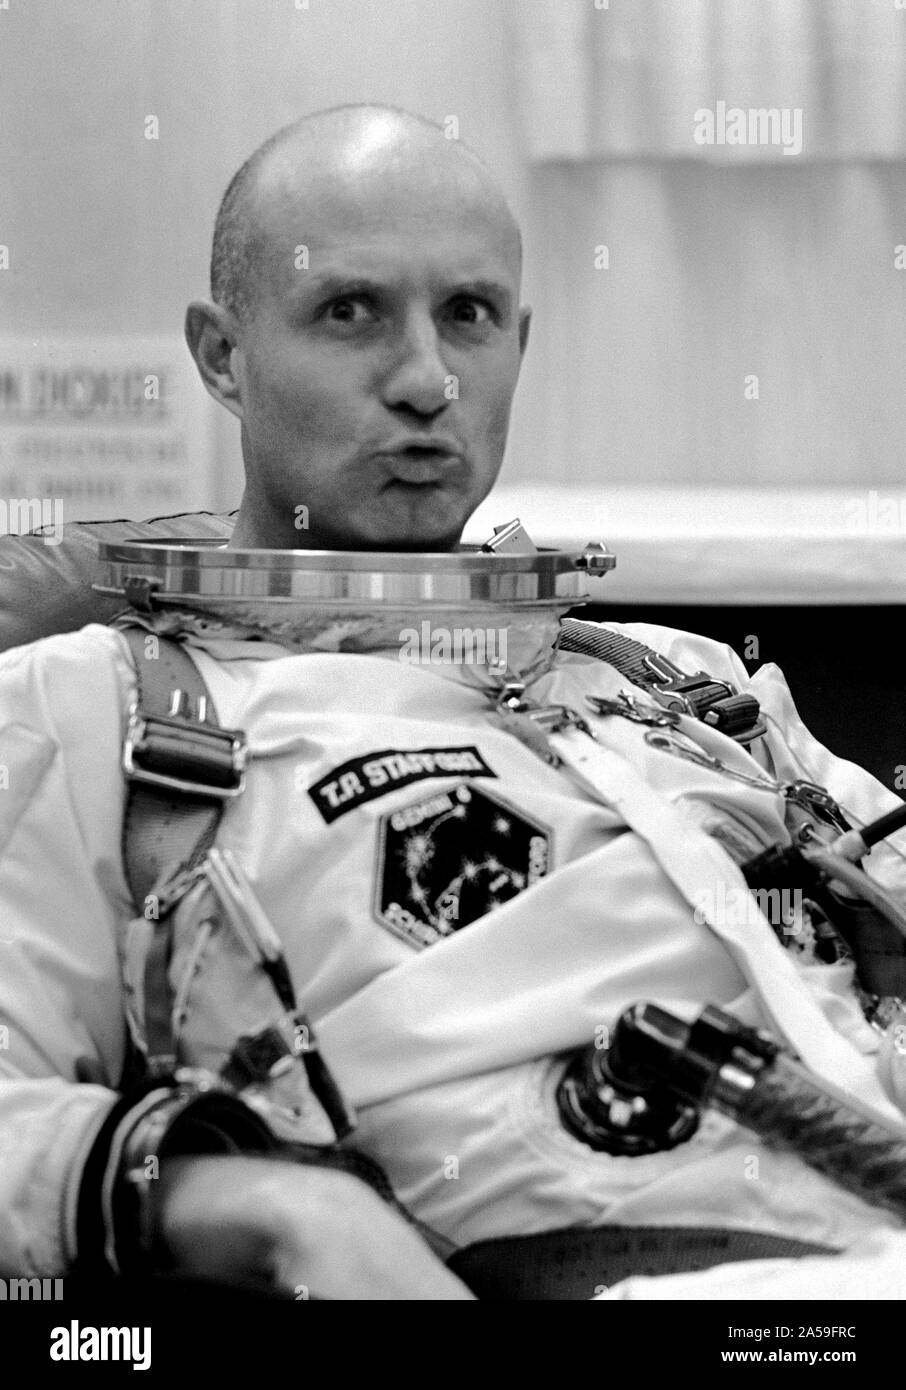 (12 Dezember 1965) - - - Astronaut Thomas P. Stafford, Pilot, macht eine Gesichtsbehandlung Geste in die Kamera, während sie passend in Launch Complex 16 Trailer während Gemini-6 prelaunch Countdown. Stockfoto